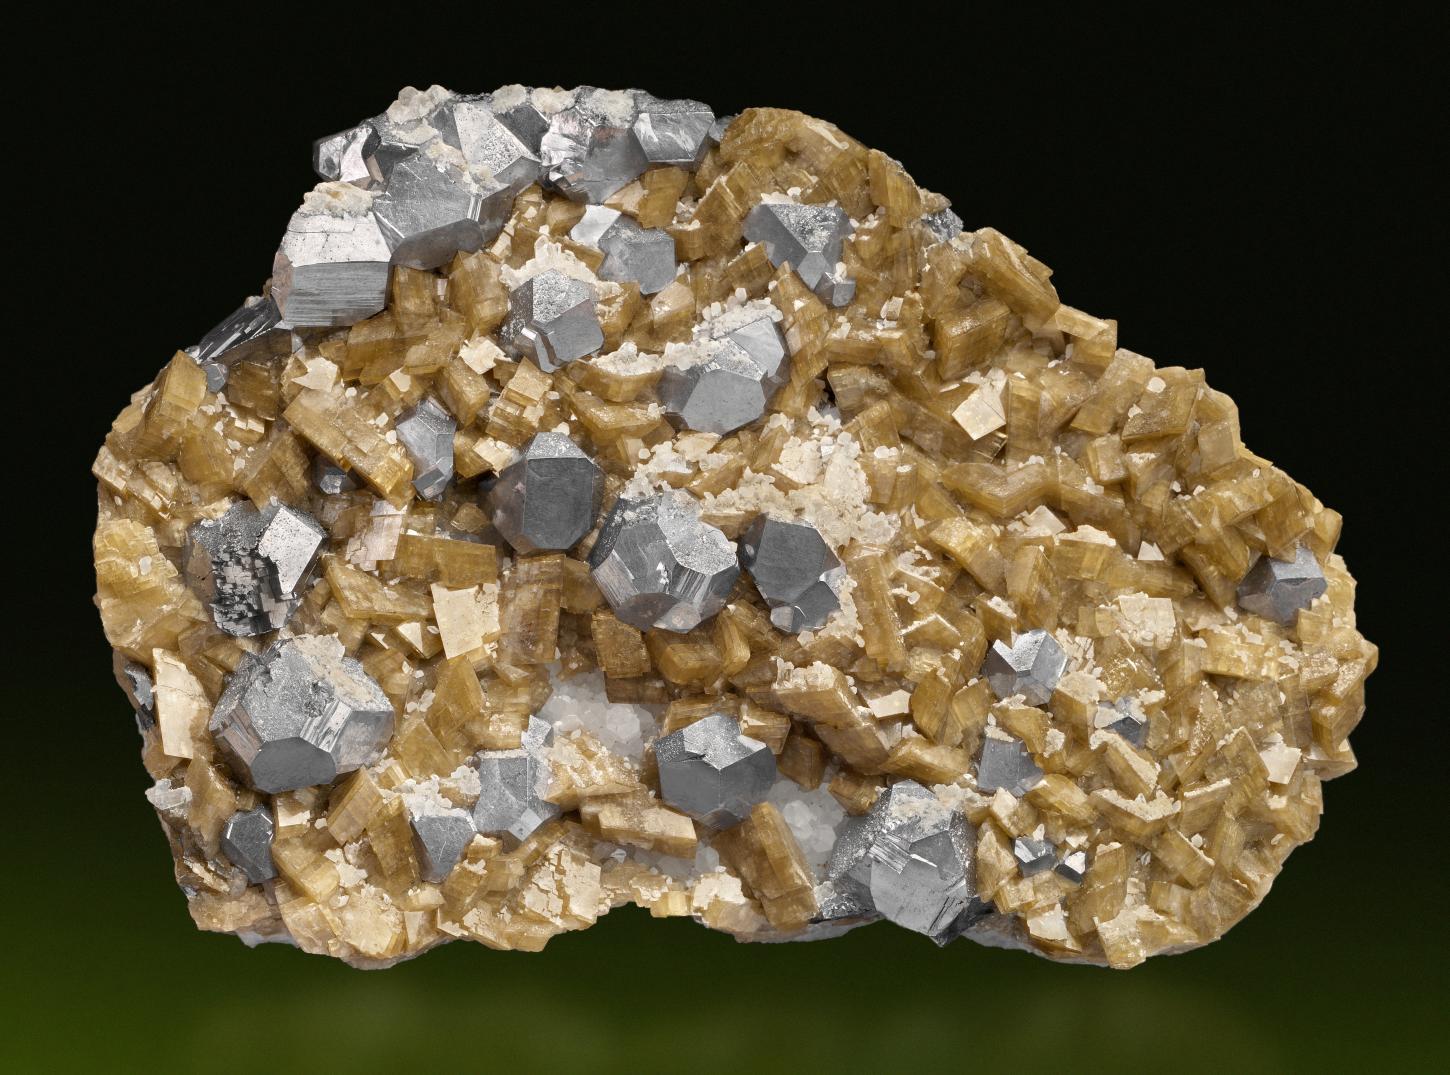 stahlgraue Galenitkristalle im sogenannten Neudorfer Typ, einer Kombination aus Würfel, Oktaeder und Rhombendodekaeder sitzen zwischen strohgelben Sideritkristallen auf einer circa 12,5 cm breiten Stufe 